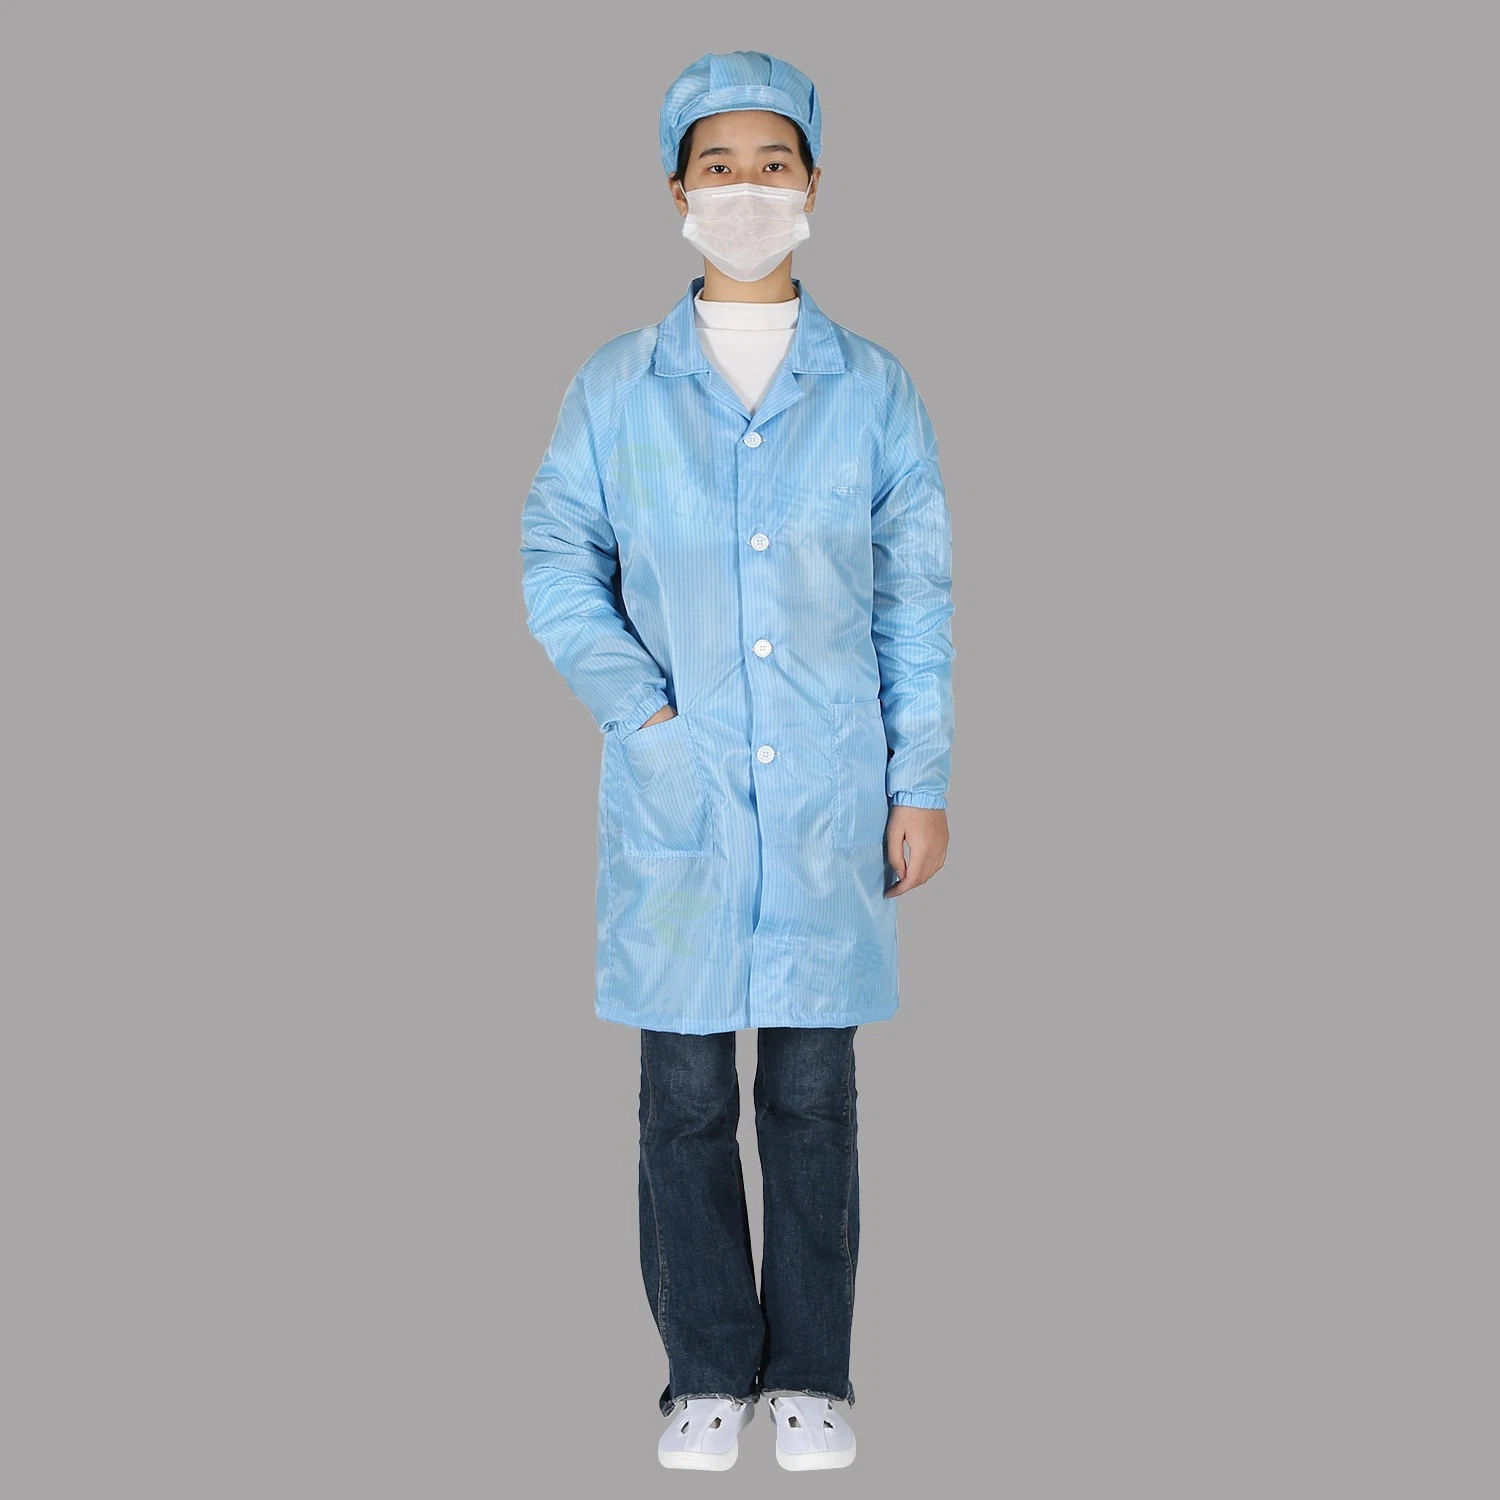 Blue 5mm Grid Overall wiederverwendbare Reinraum Arbeitskleidung Antistatik ESD Labormantel Für Die Arbeit An Kleidungsstücken